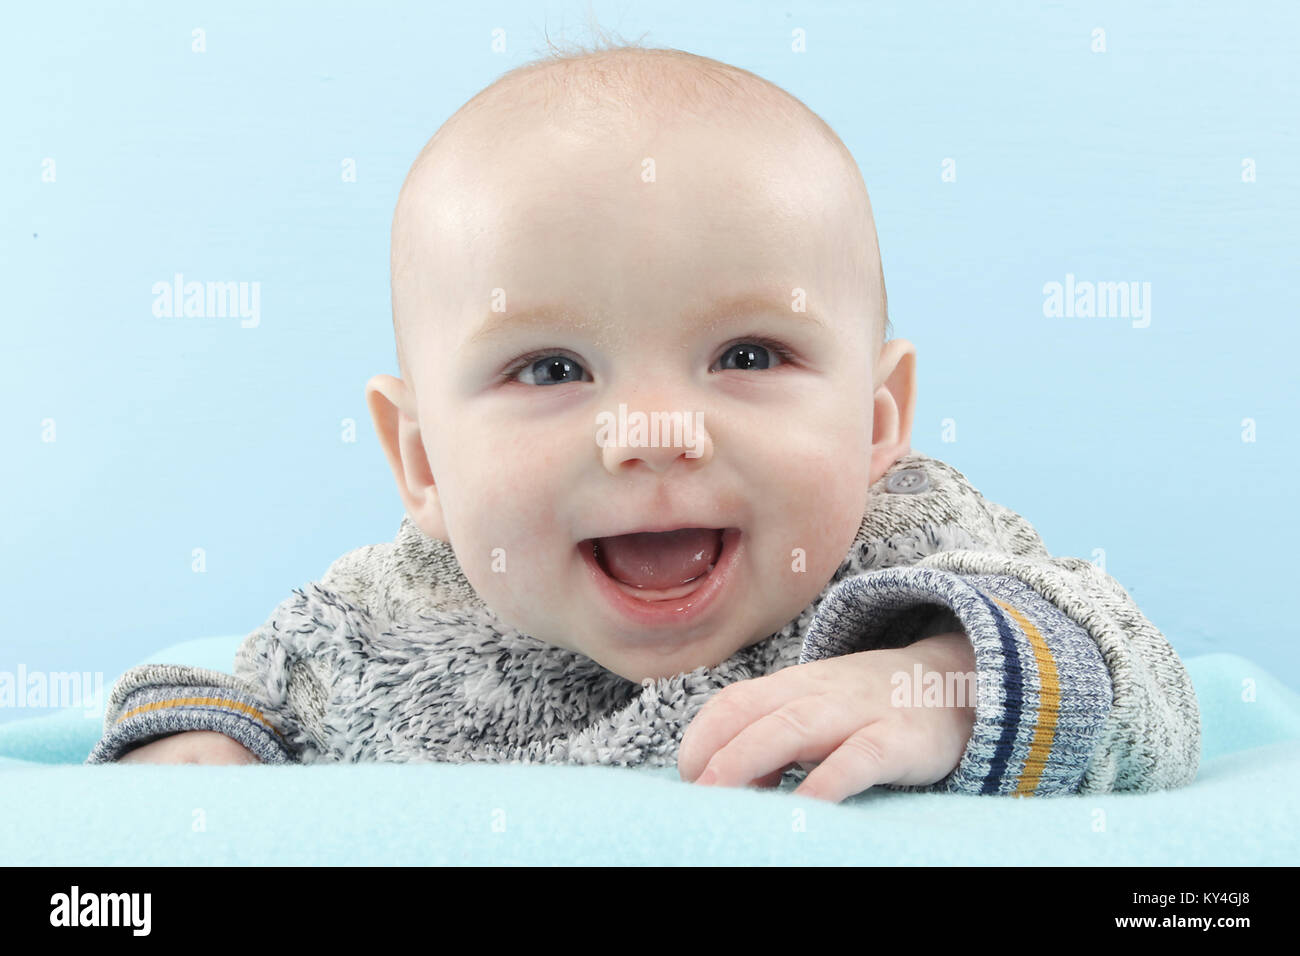 5 mois bébé garçon heureux de jouer sur un tapis de jeux, le développement de l'enfant Banque D'Images